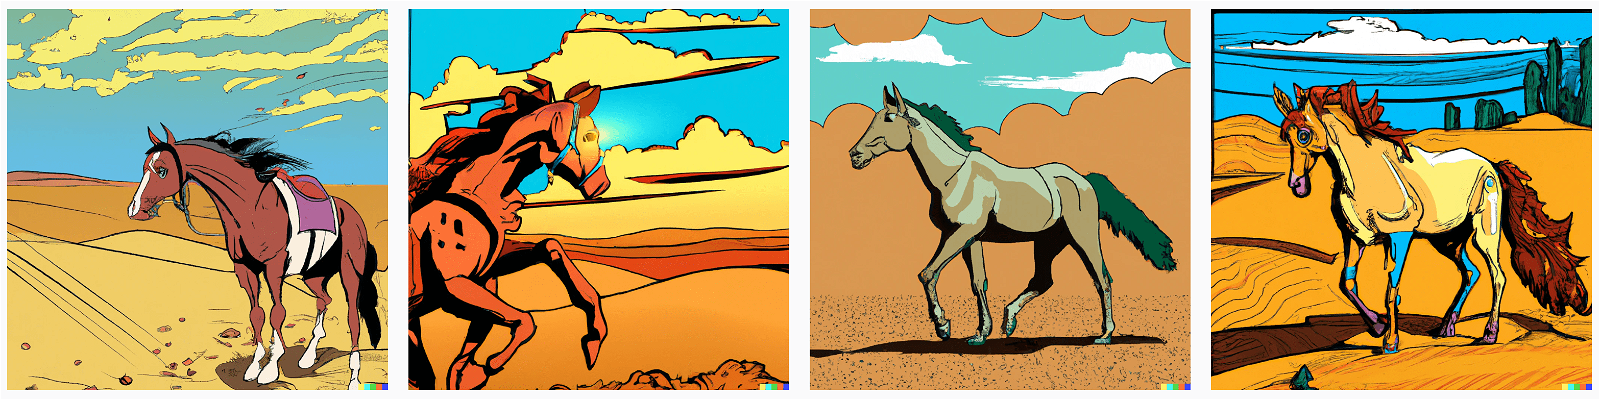 desert horse dalle2